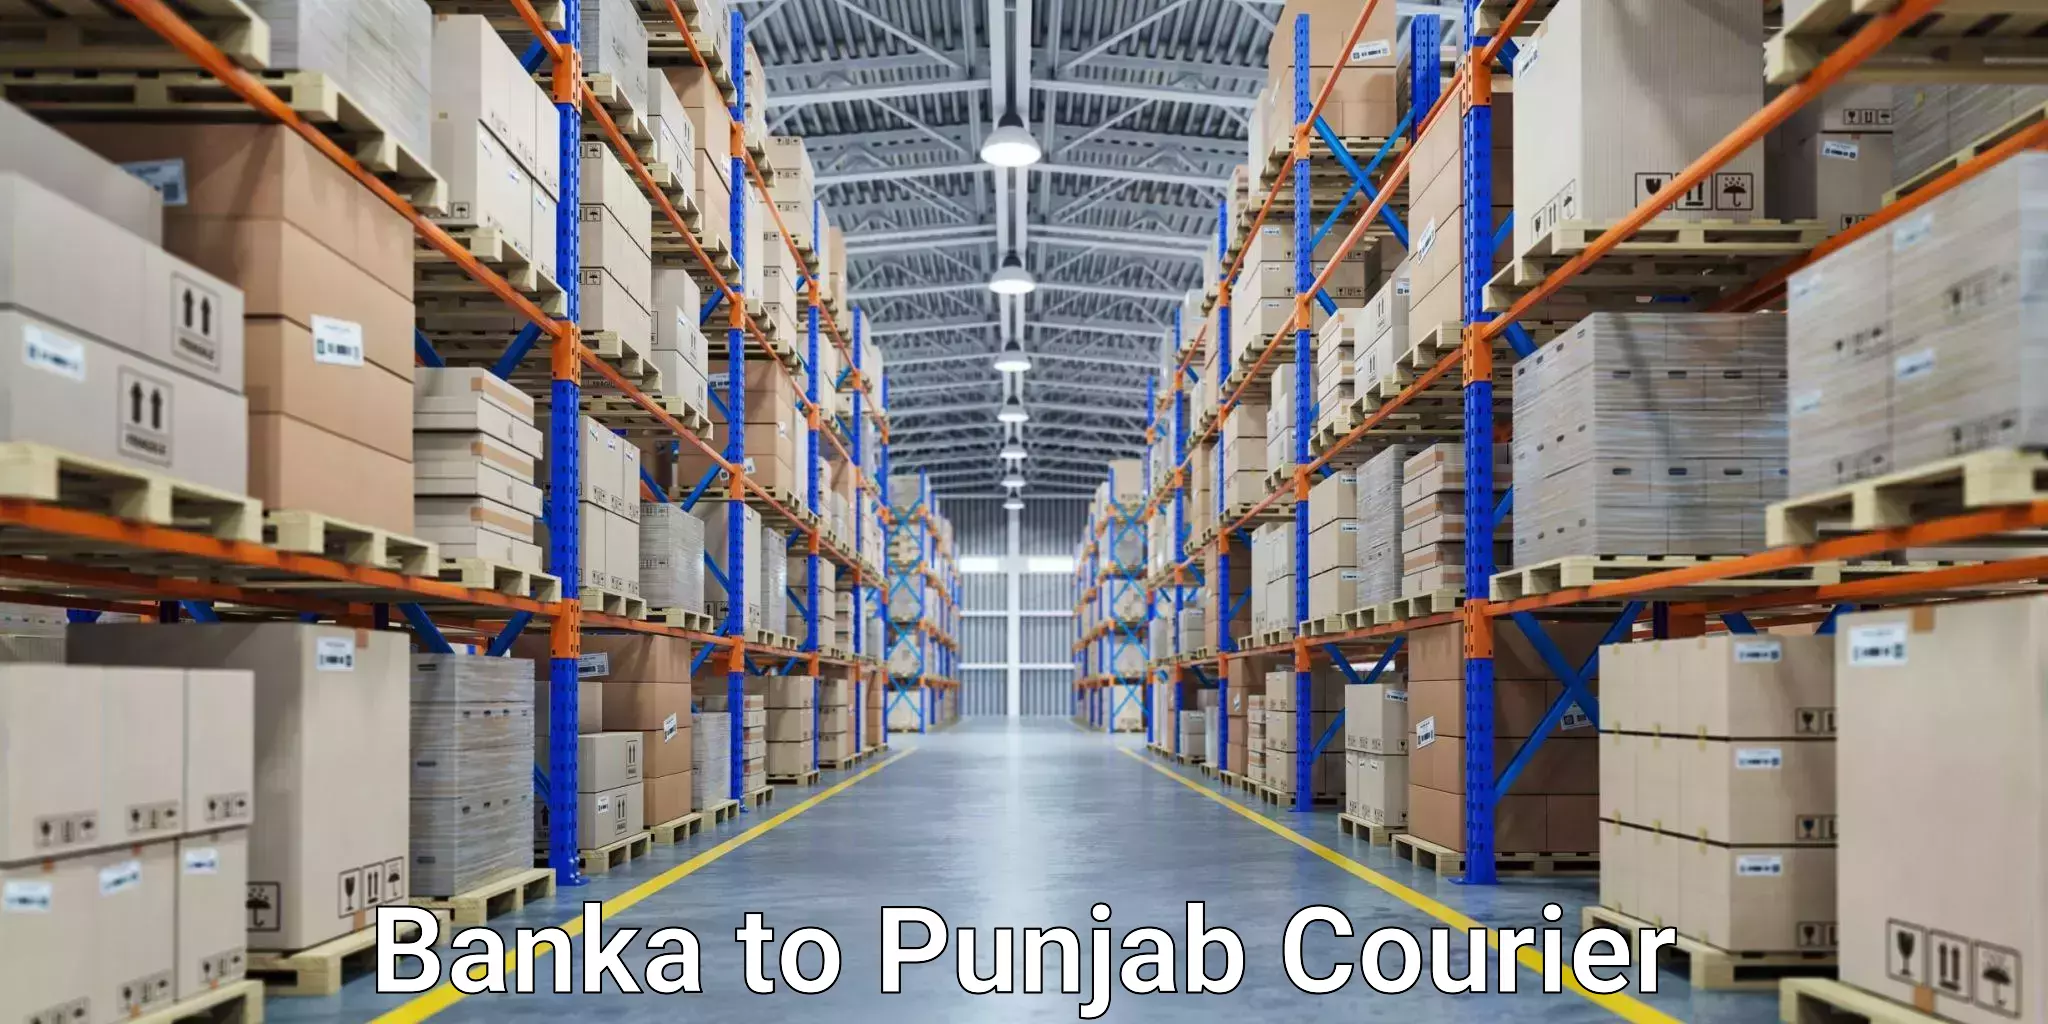 24/7 courier service Banka to Abohar